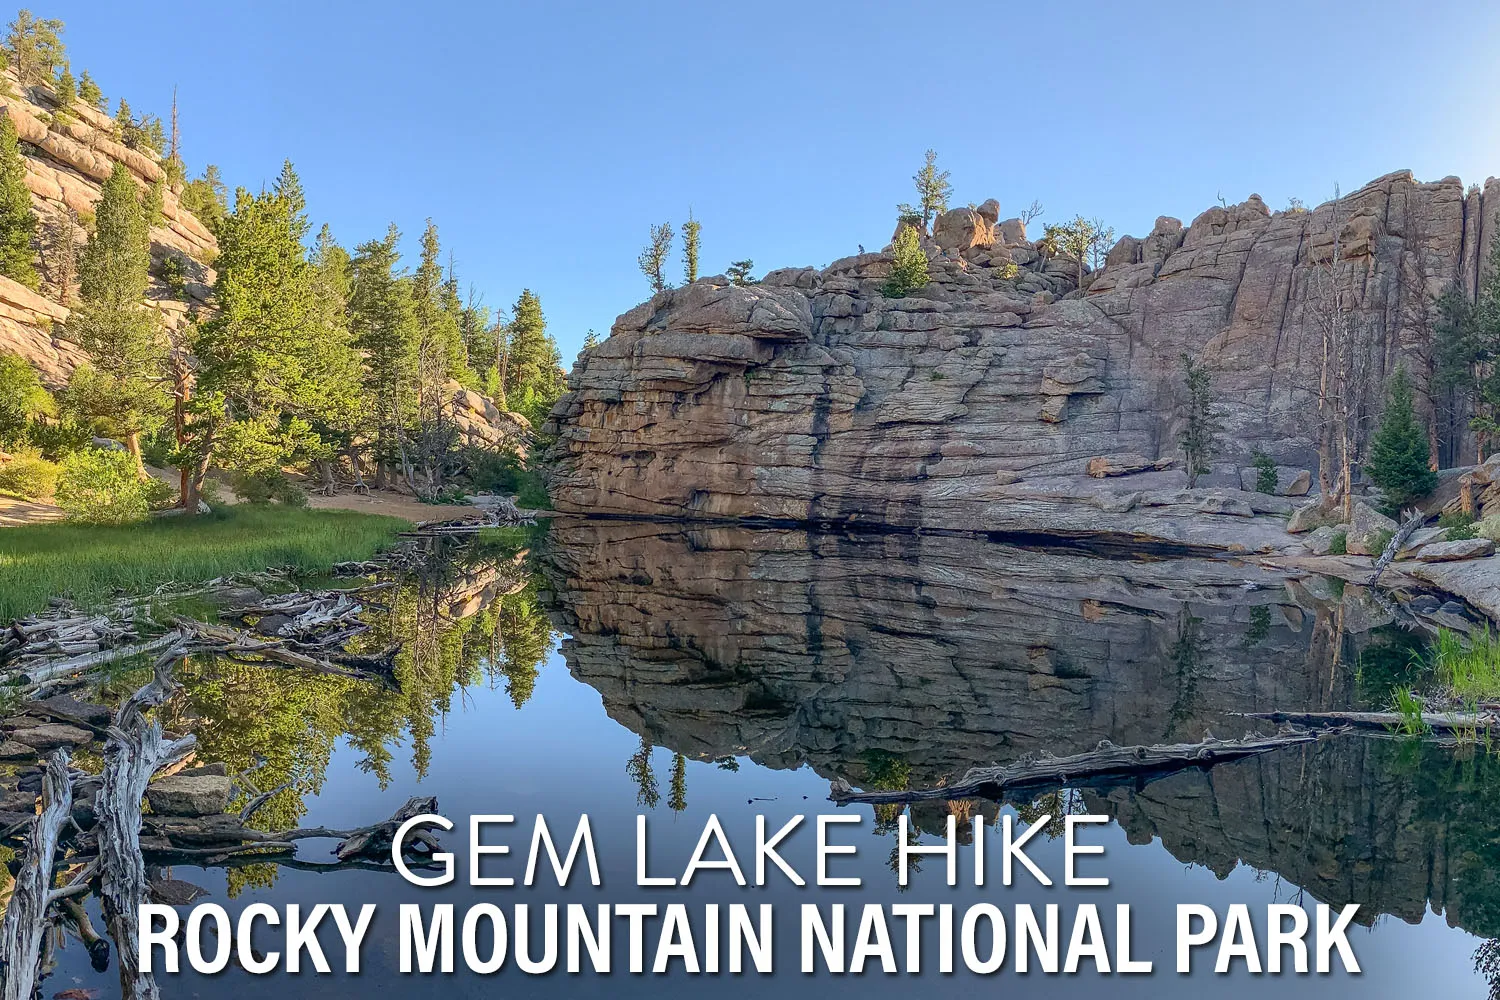 Gem Lake Hike